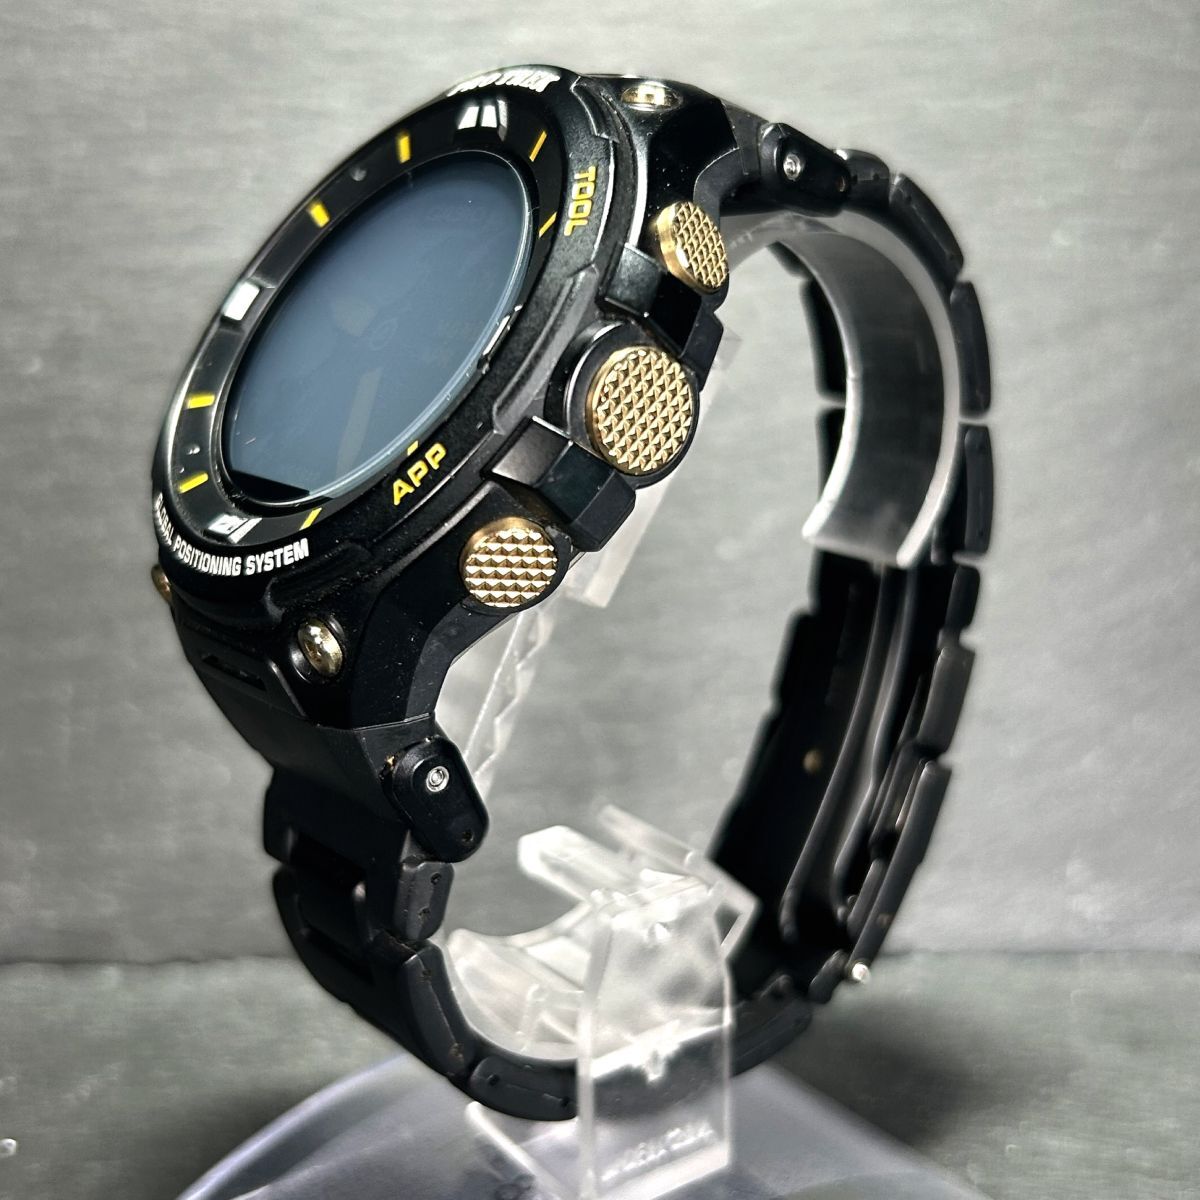  ограниченный выпуск 700шт.@CASIO Casio PRO TREK Protrek WSD-F20SC-BK наручные часы смарт-часы заряжающийся цифровой многофункциональный GPS сенсорная панель 